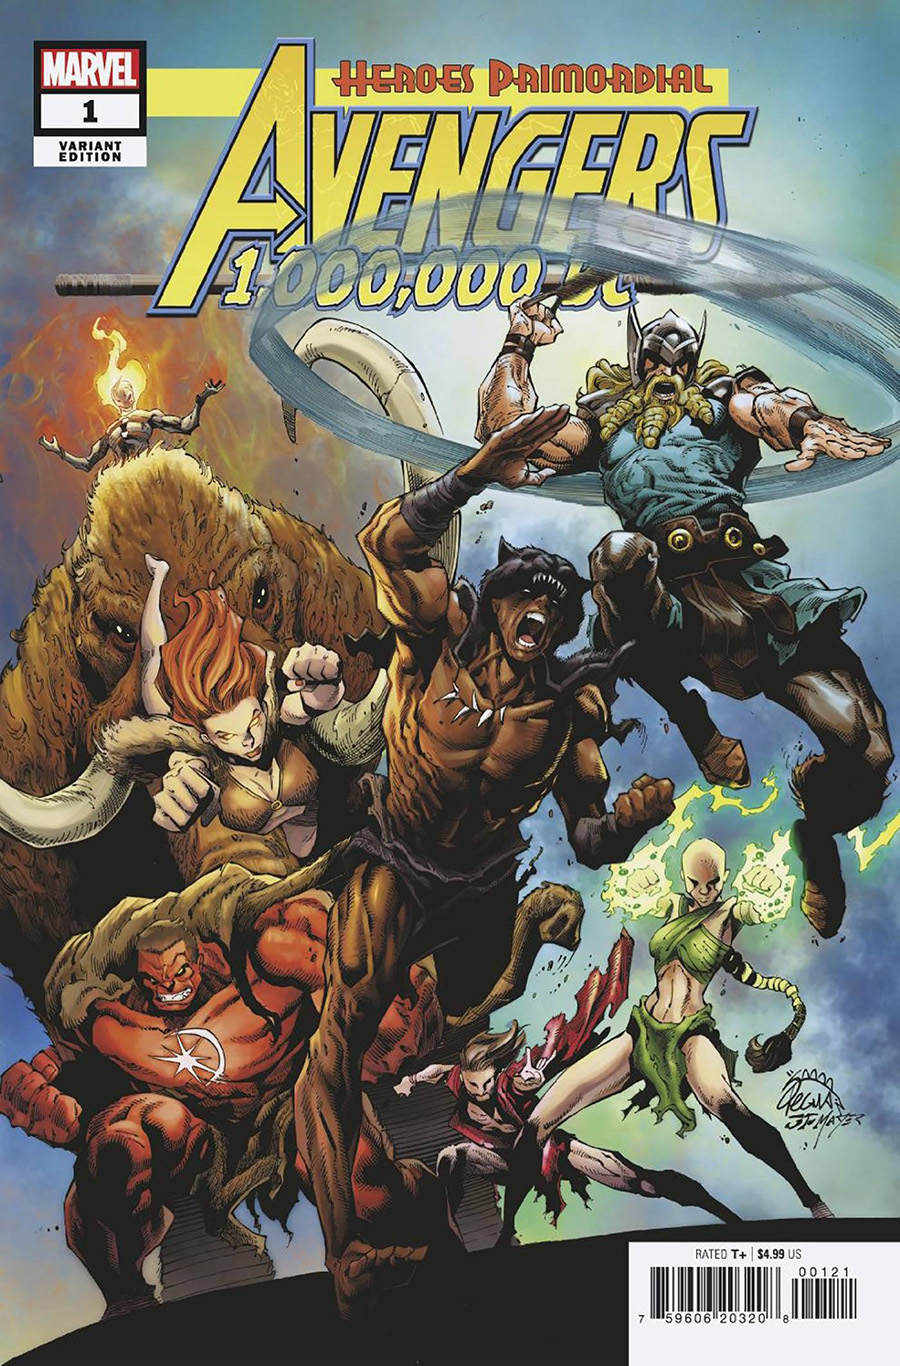 Avengers 1000000 BC #1 (One Shot) Cover B Variant Ryan Stegman Prehistoric Homage Cover